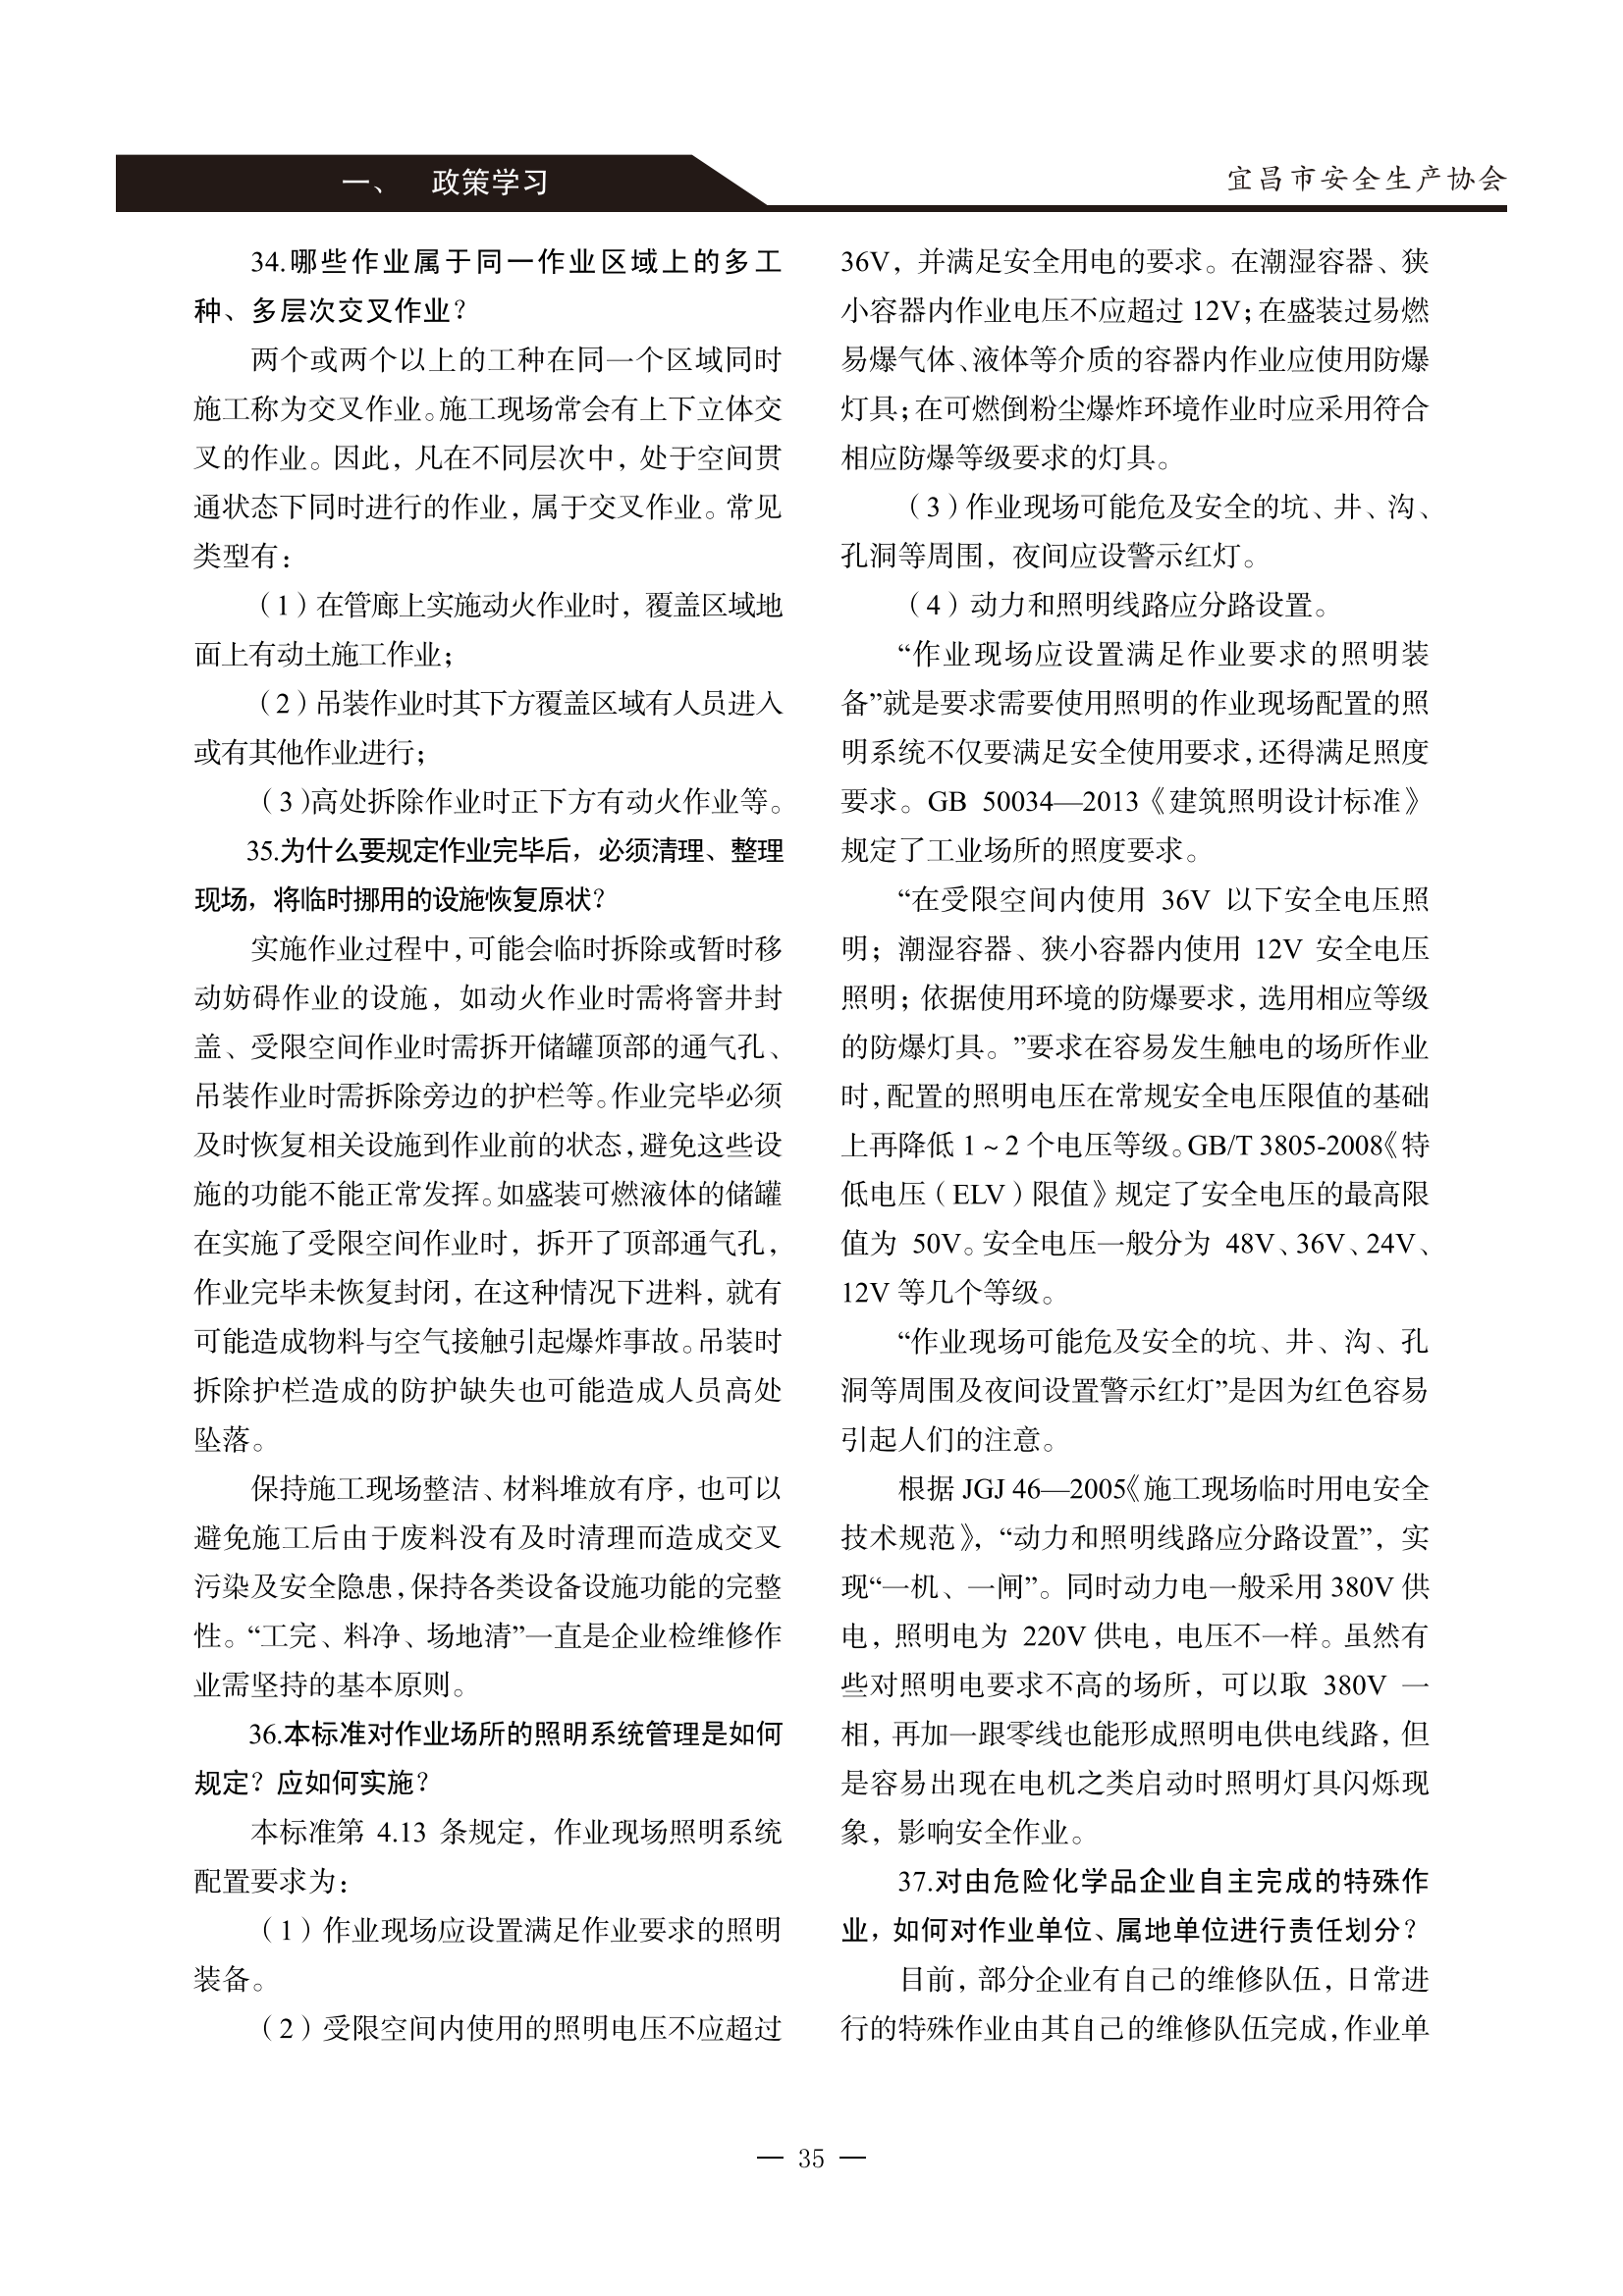 宜昌安全生产期刊第一期_40.png